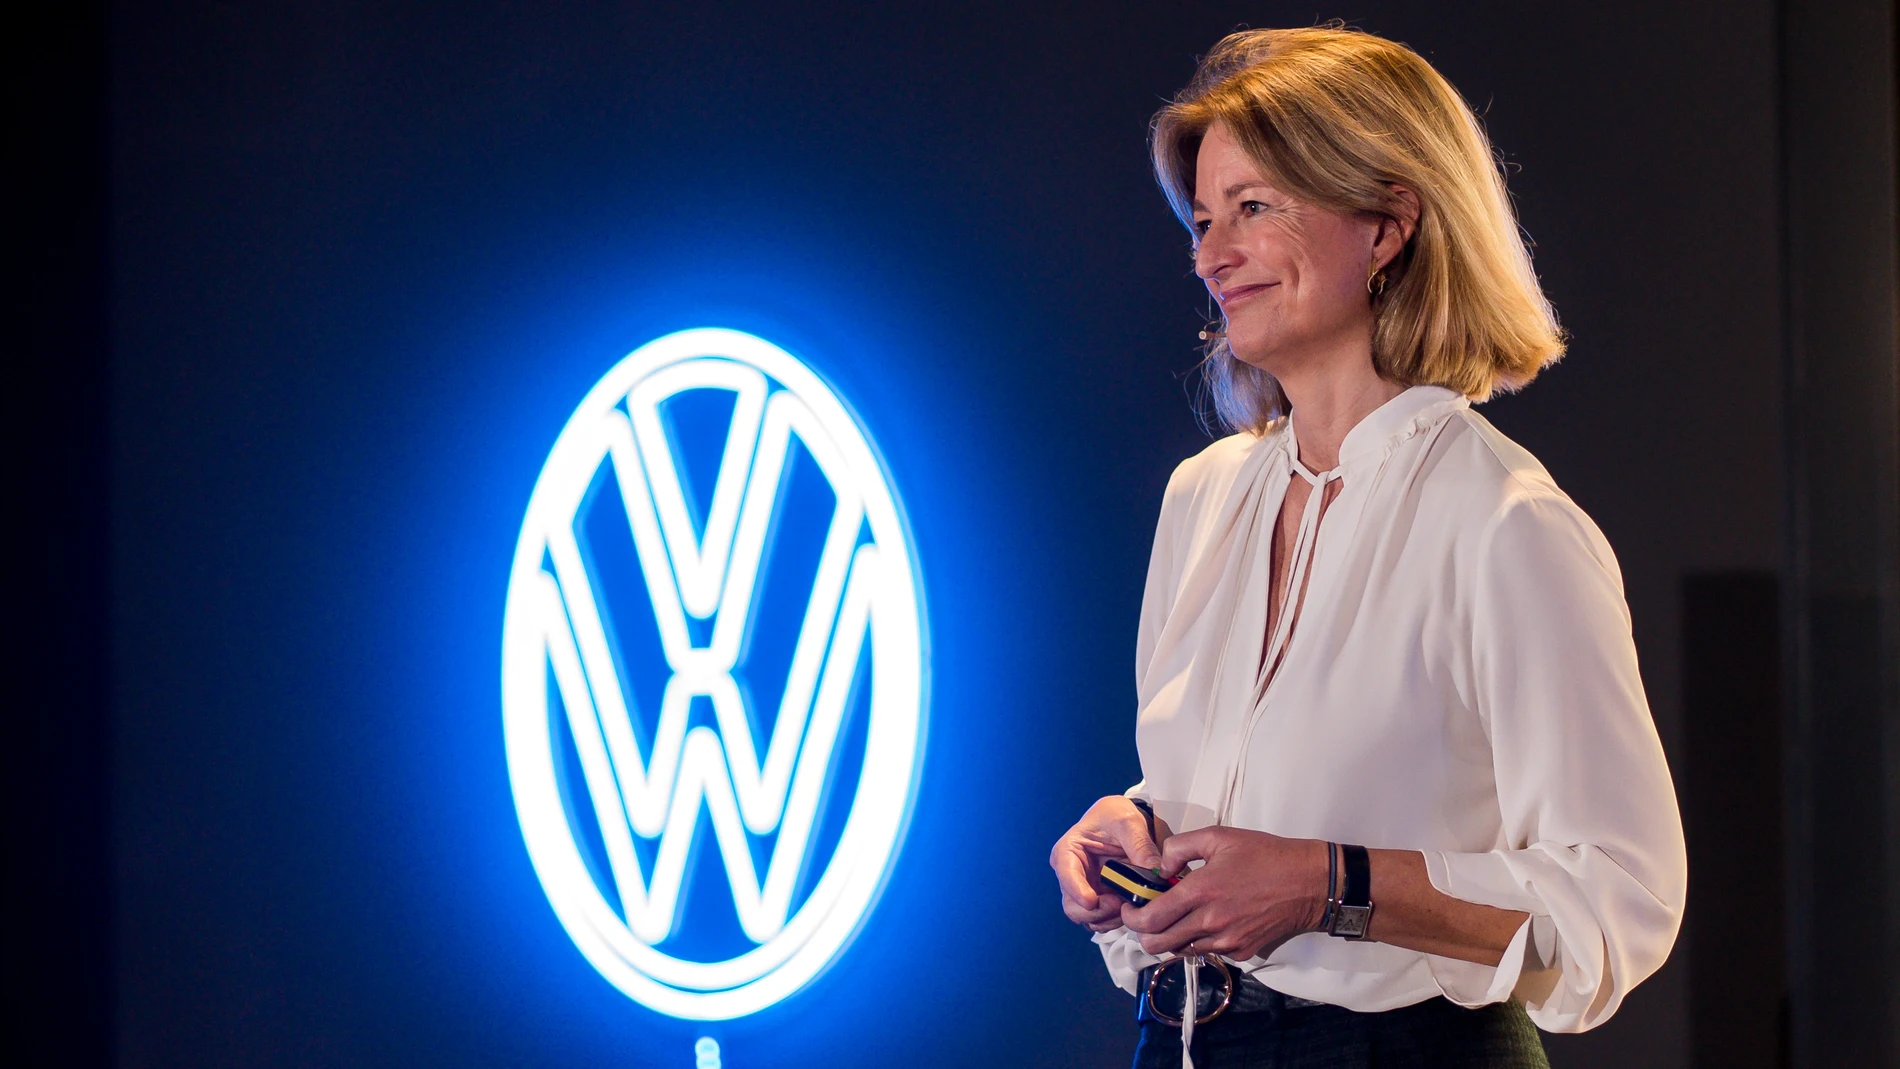 Laura Ros (VW) confirma la fabricación en España del ID.2all eléctrico